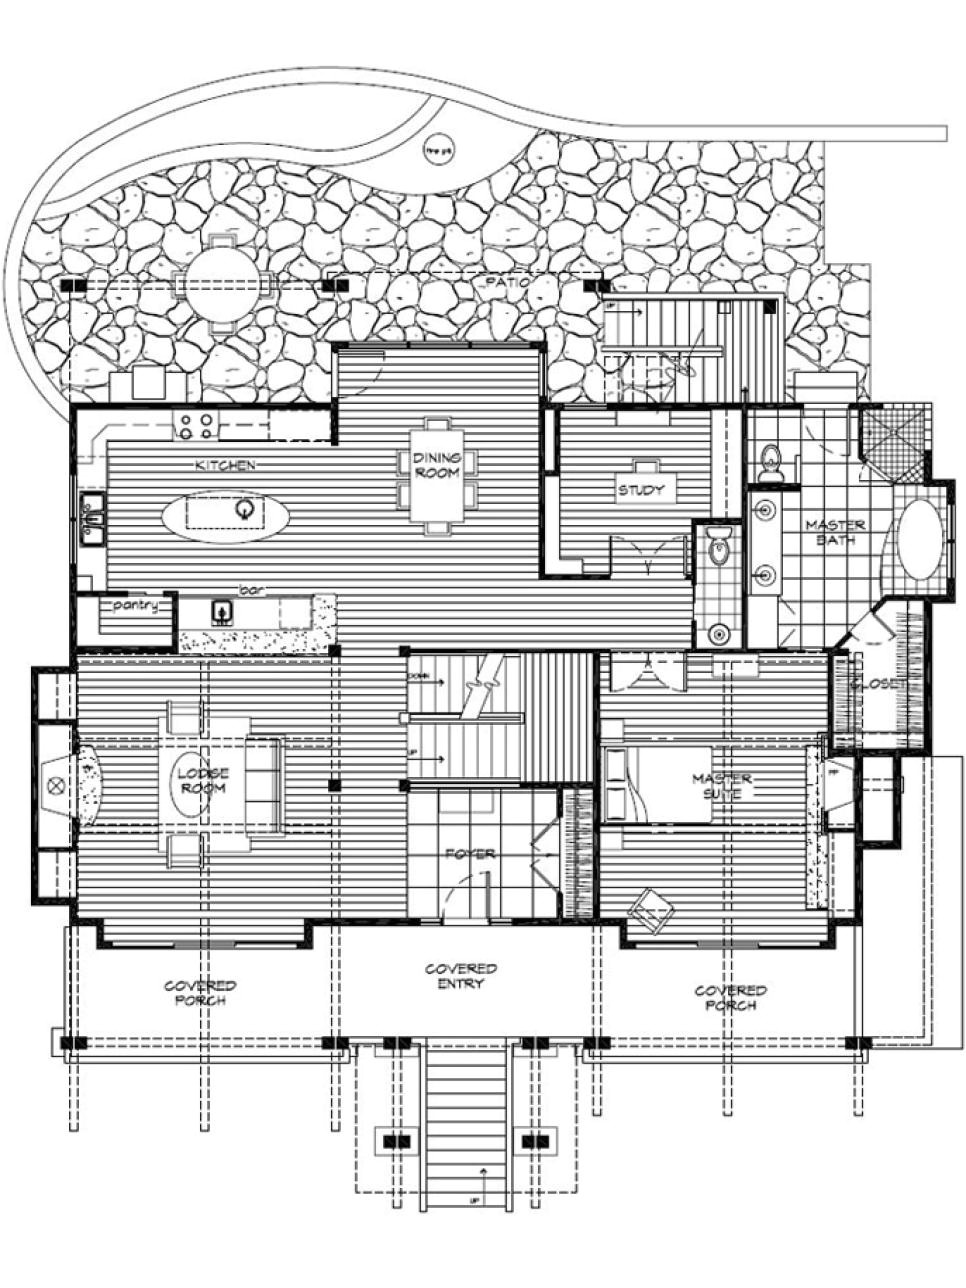 Hgtv House Plans Designs Floor Plans for Hgtv Dream Home 2007 Hgtv Dream Home